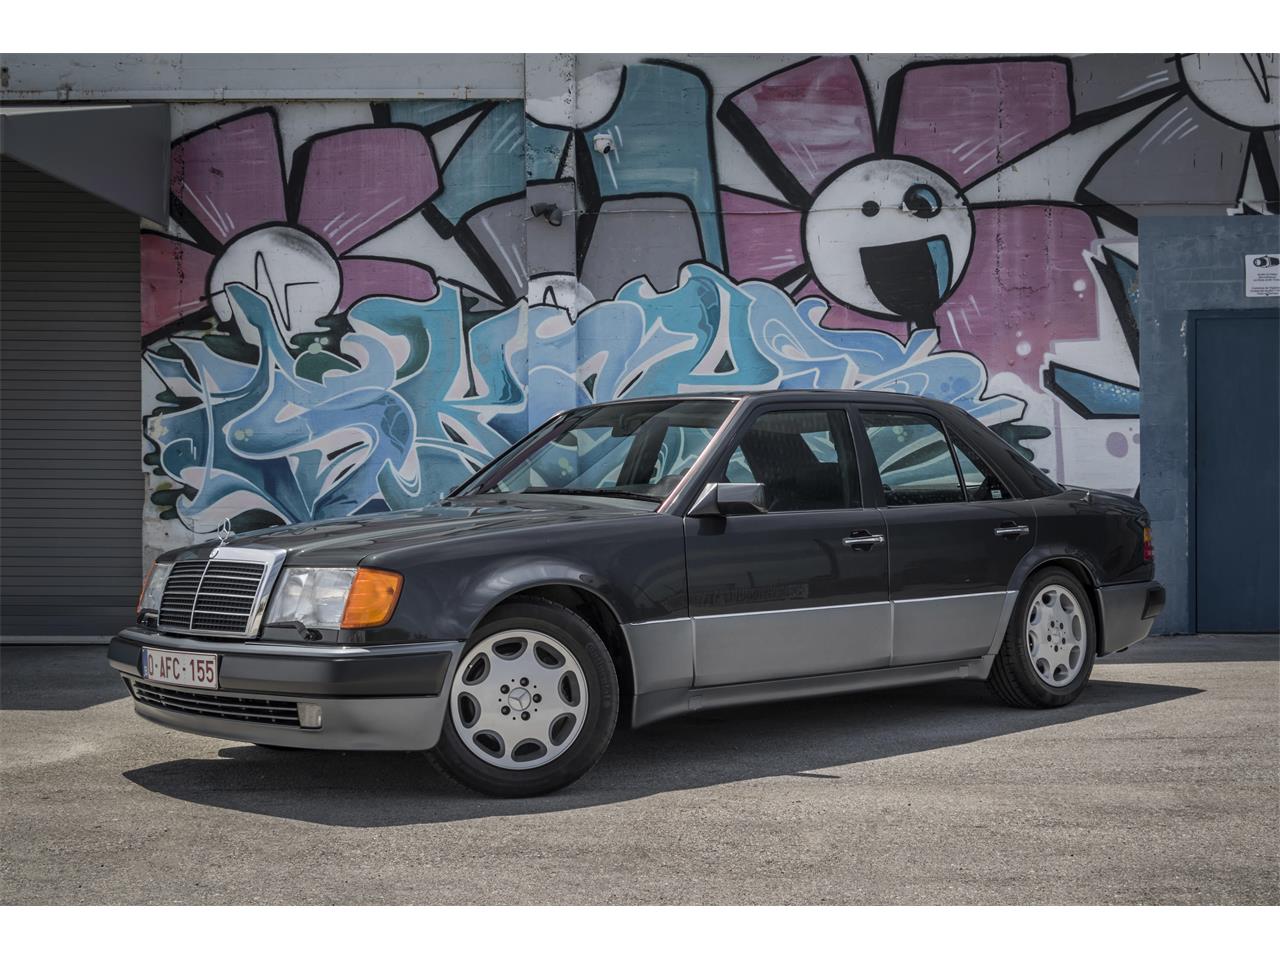 For Sale: 1992 Mercedes-Benz 500 in Miami, Florida for sale in Miami, FL